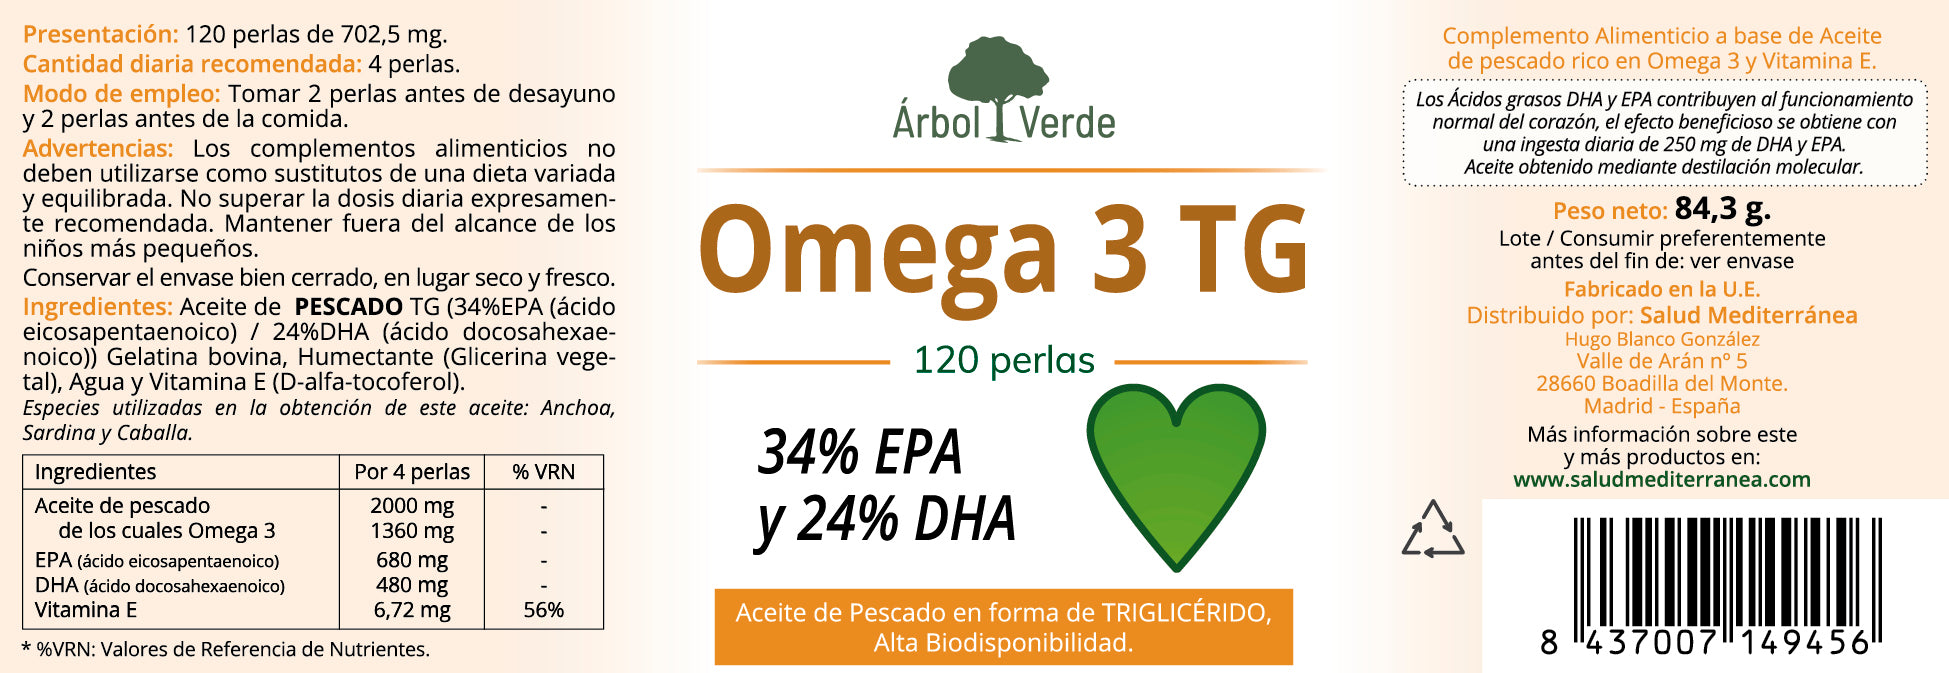 Etiqueta Omega 3 TG (con 34% EPA y 24% DHA) - 120 Perlas. Árbol Verde. Herbolario Salud Mediterranea